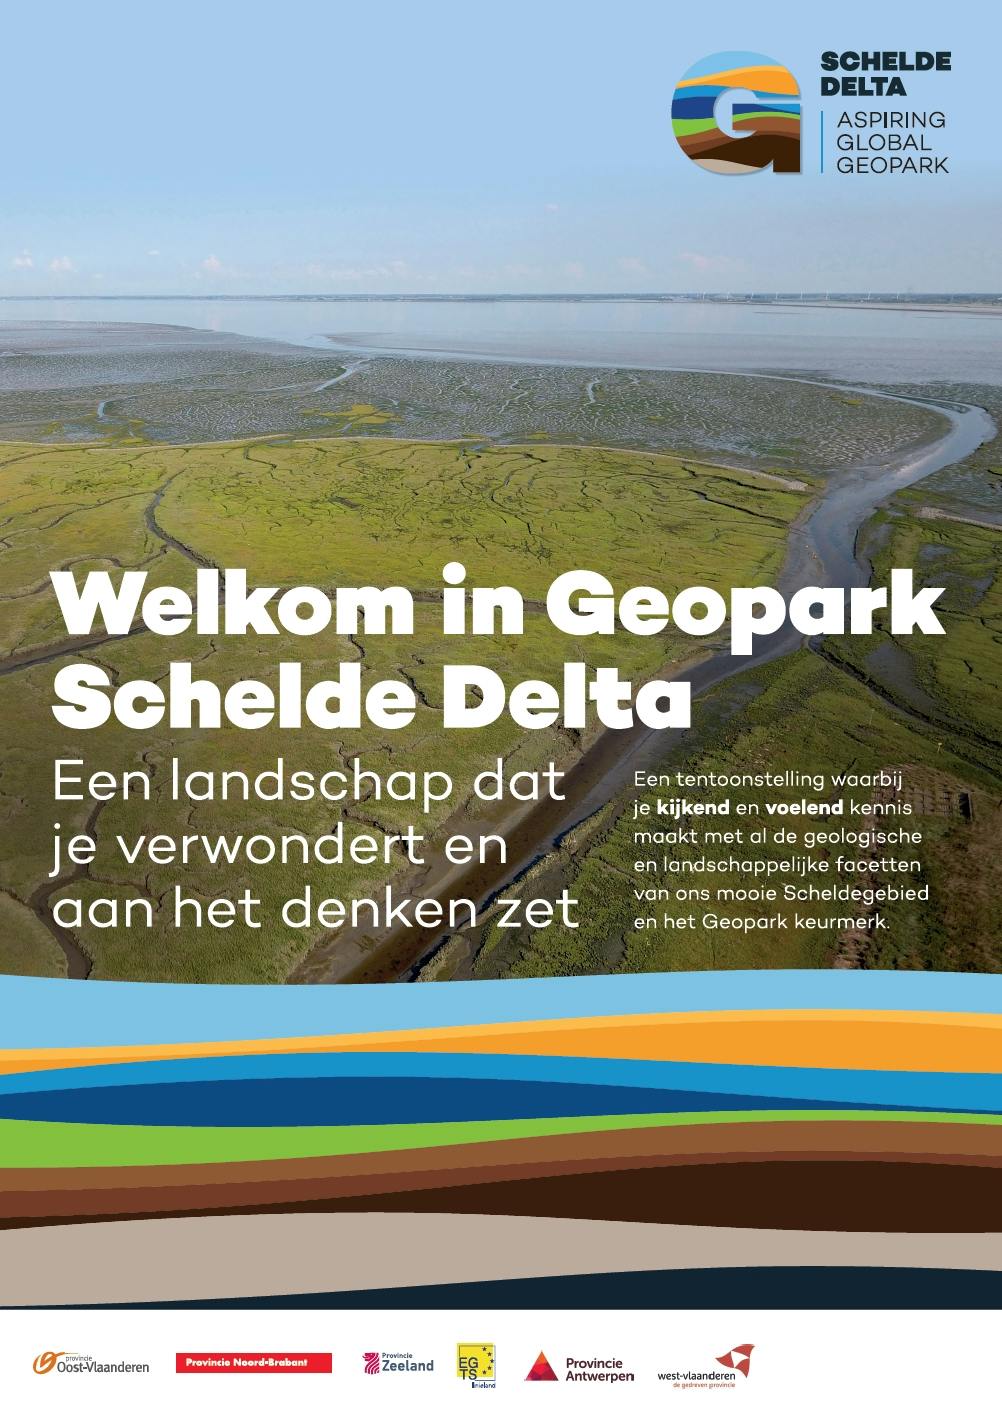 Expo 'Welkom in Geopark Schelde Delta'